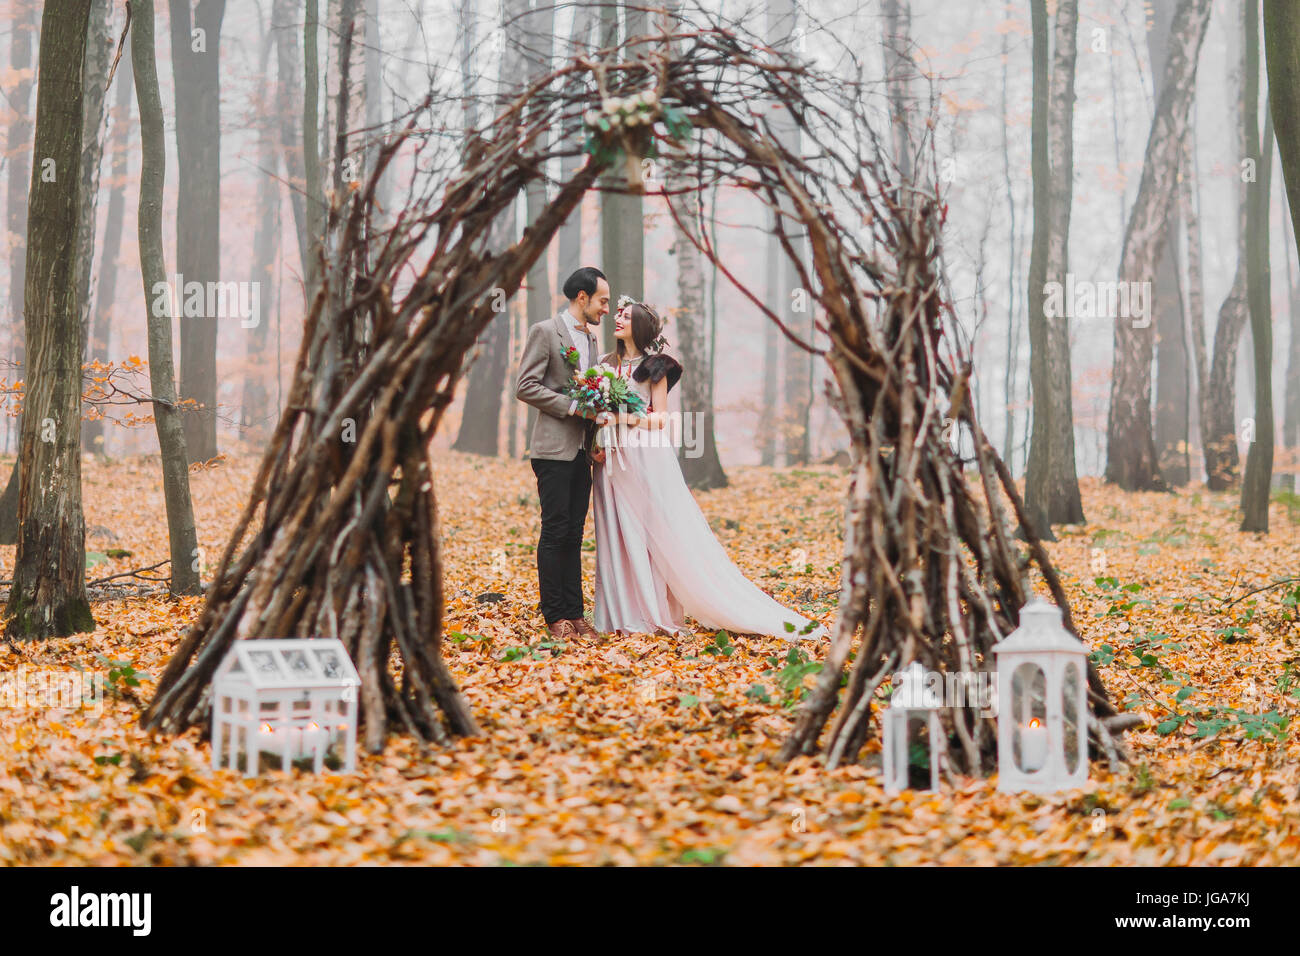 Glücklich Brünette Brautpaar schauen liebevoll einander unter dem kreativen hübsch dekorierte Hochzeit Bogen im herbstlichen Wald Stockfoto